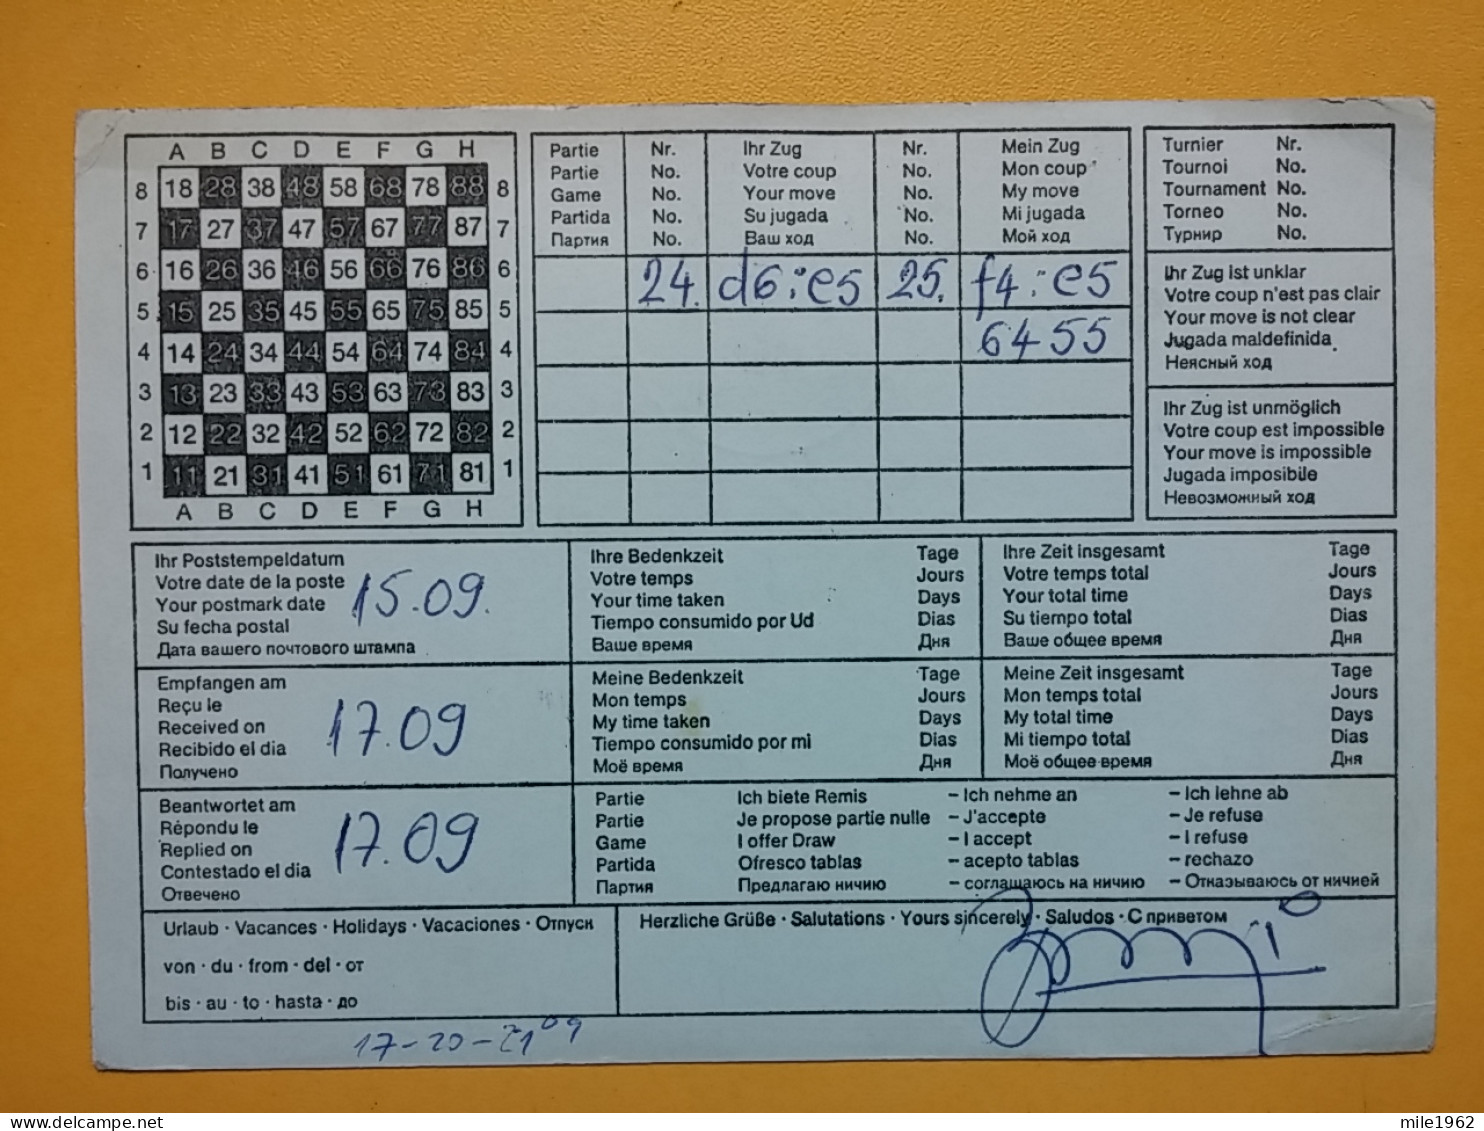 KOV 487-26 - Correspondence Chess Fernschach Postcard, PRISTINA - BELGRADE, Schach Chess Ajedrez échecs - Schach